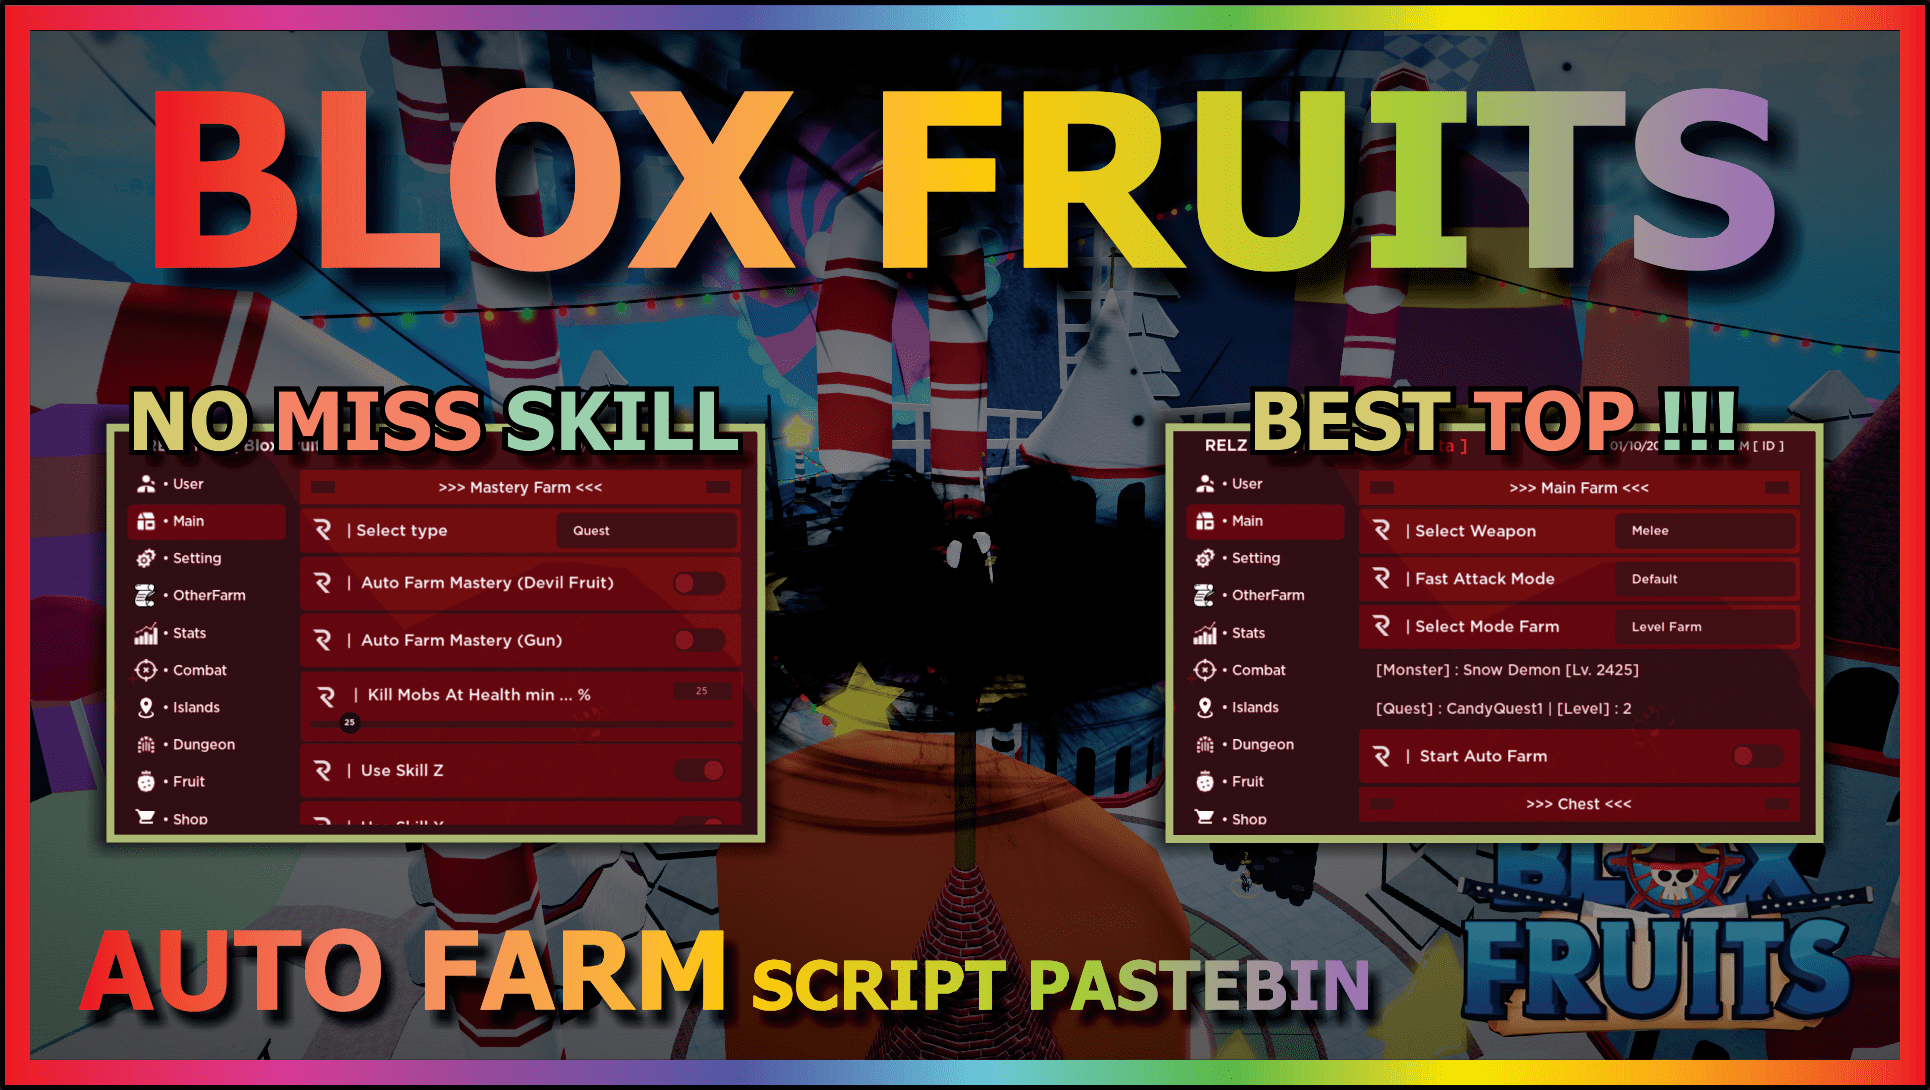 Blox Fruits Script Pastebin 2023 full working in 2023